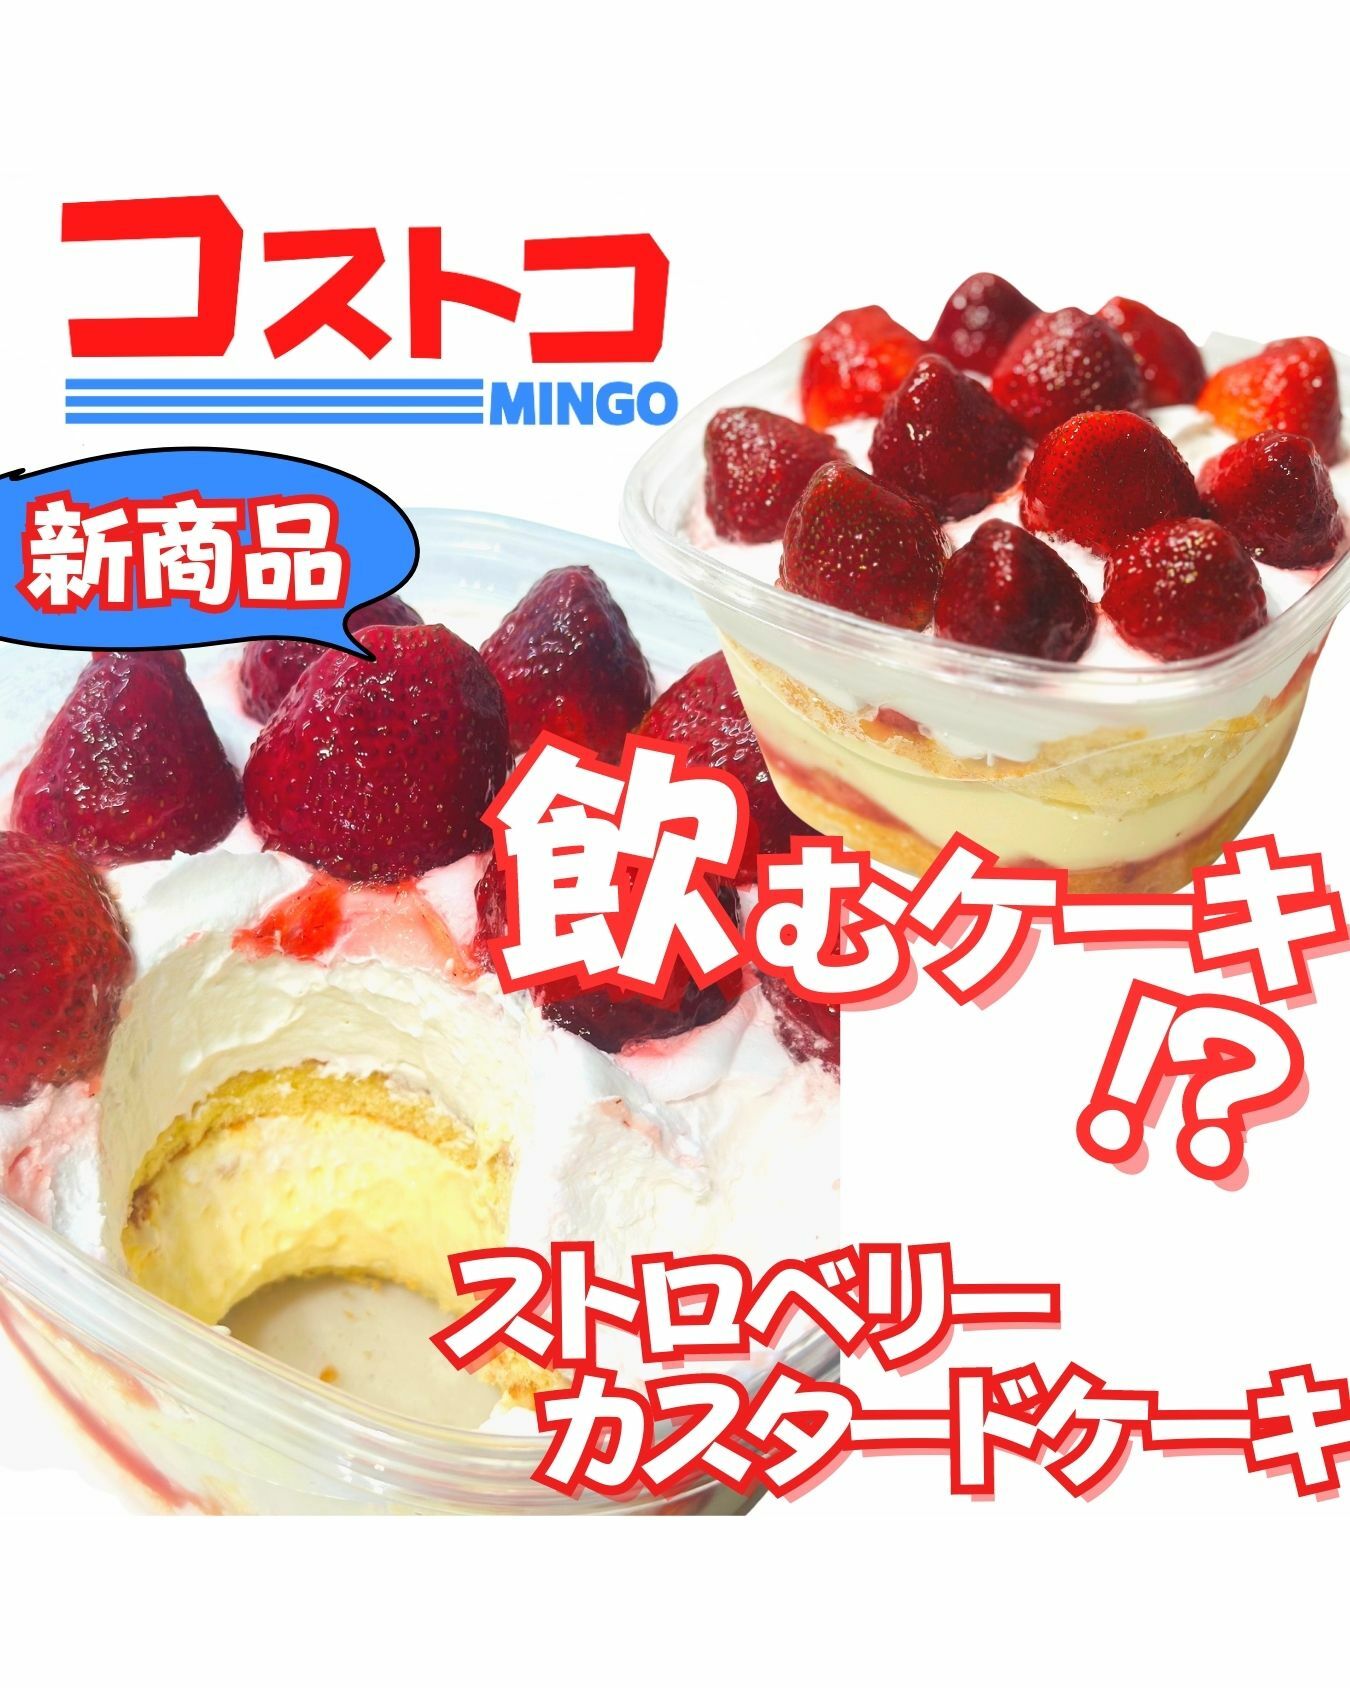 【コストコ】新商品ストロベリーカスタードクリームケーキ